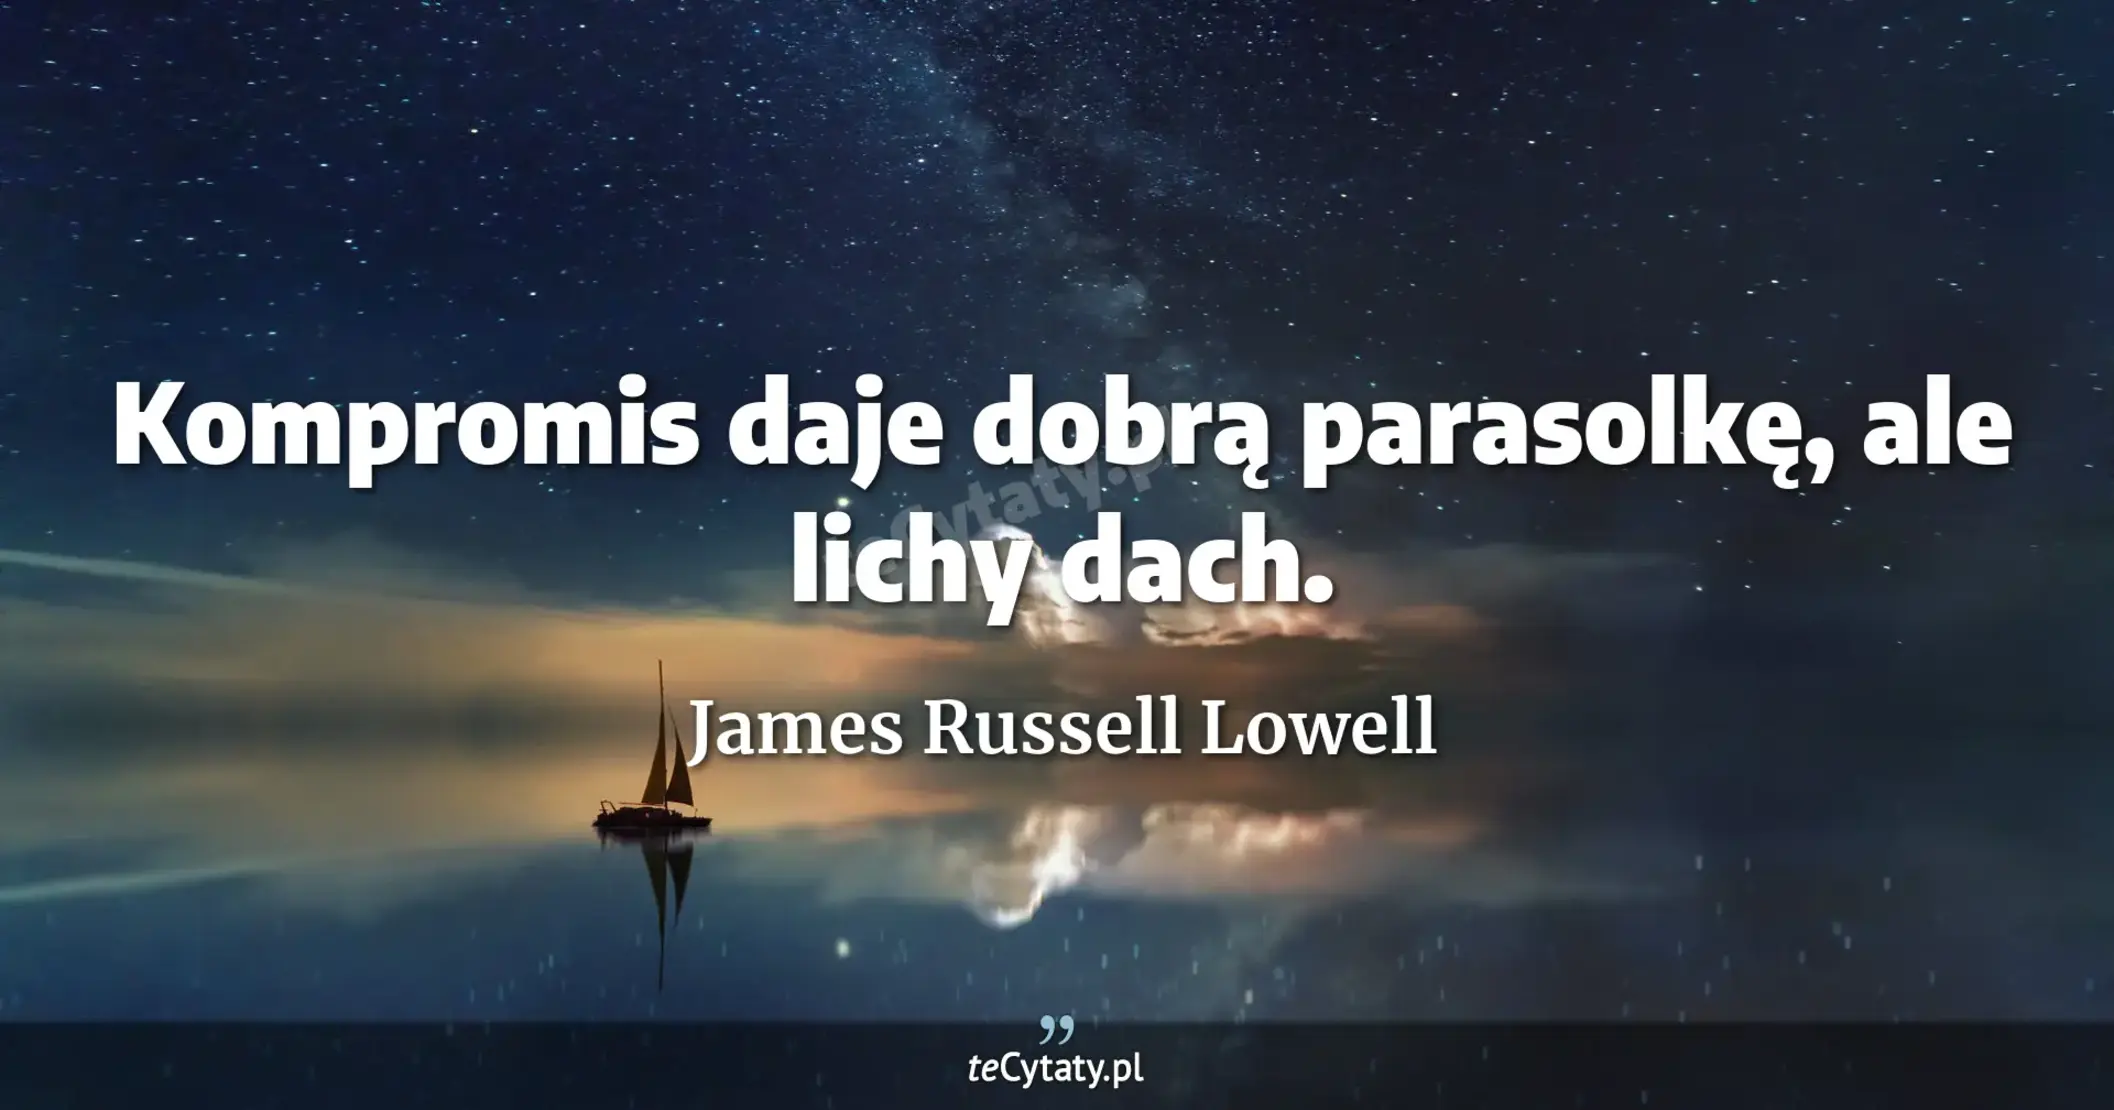 Kompromis daje dobrą parasolkę, ale lichy dach. - James Russell Lowell